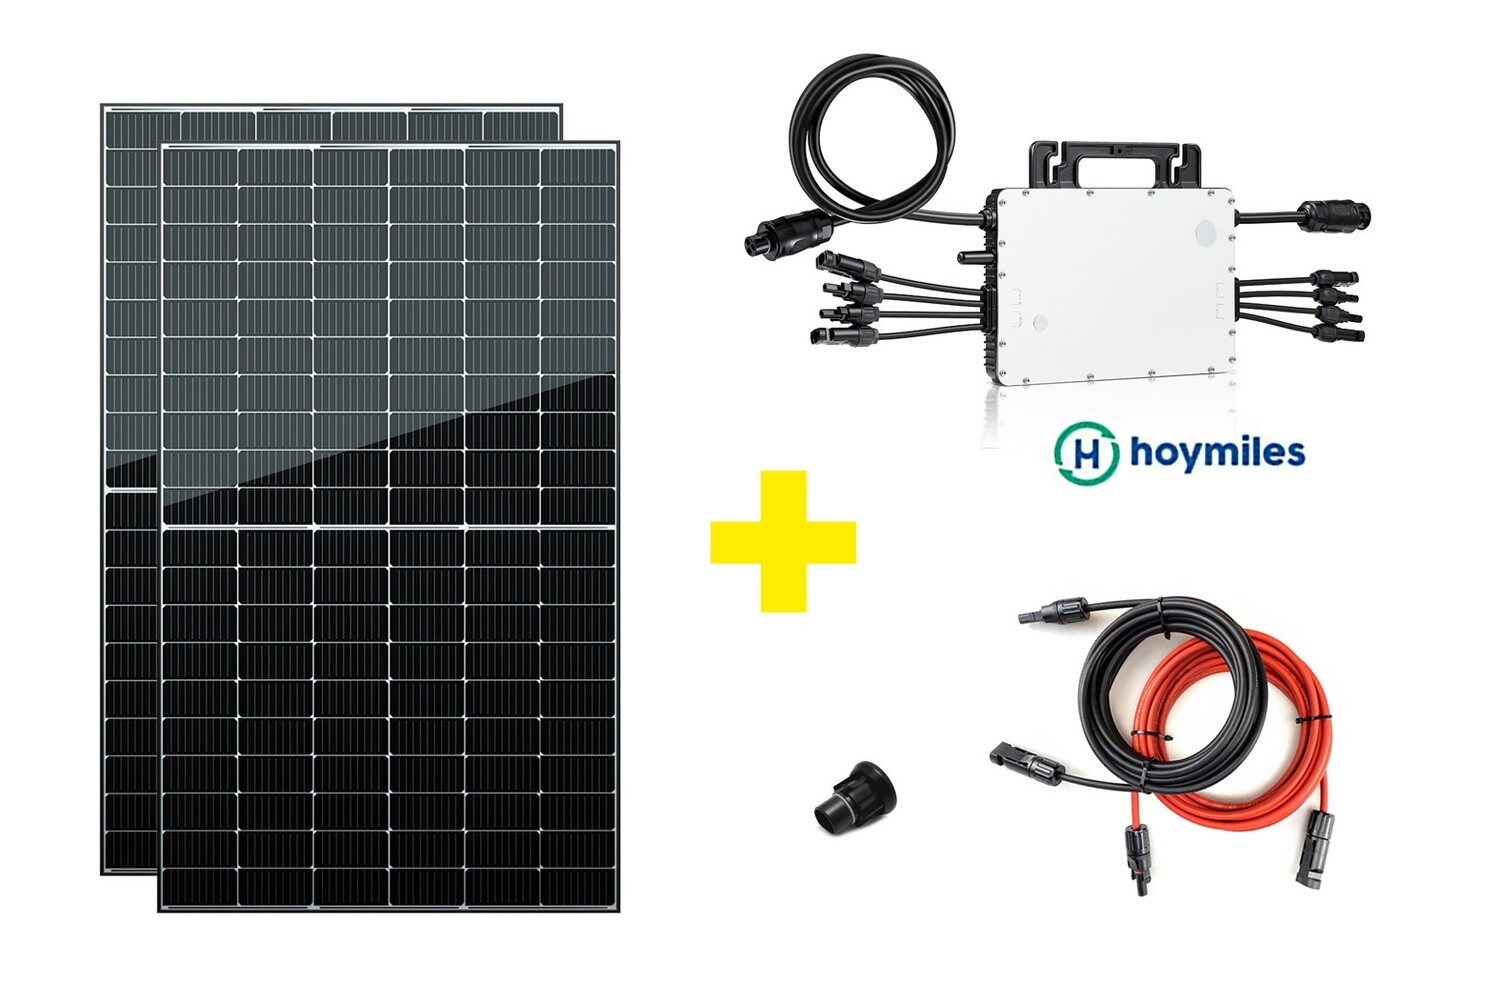 Bestseller Mini PV Anlage 1500 Watt - mit 2 Solarmodulen 820 Wp - nach Vereinbarung abholbar oder Lieferung innerhalb von 24 Tagen